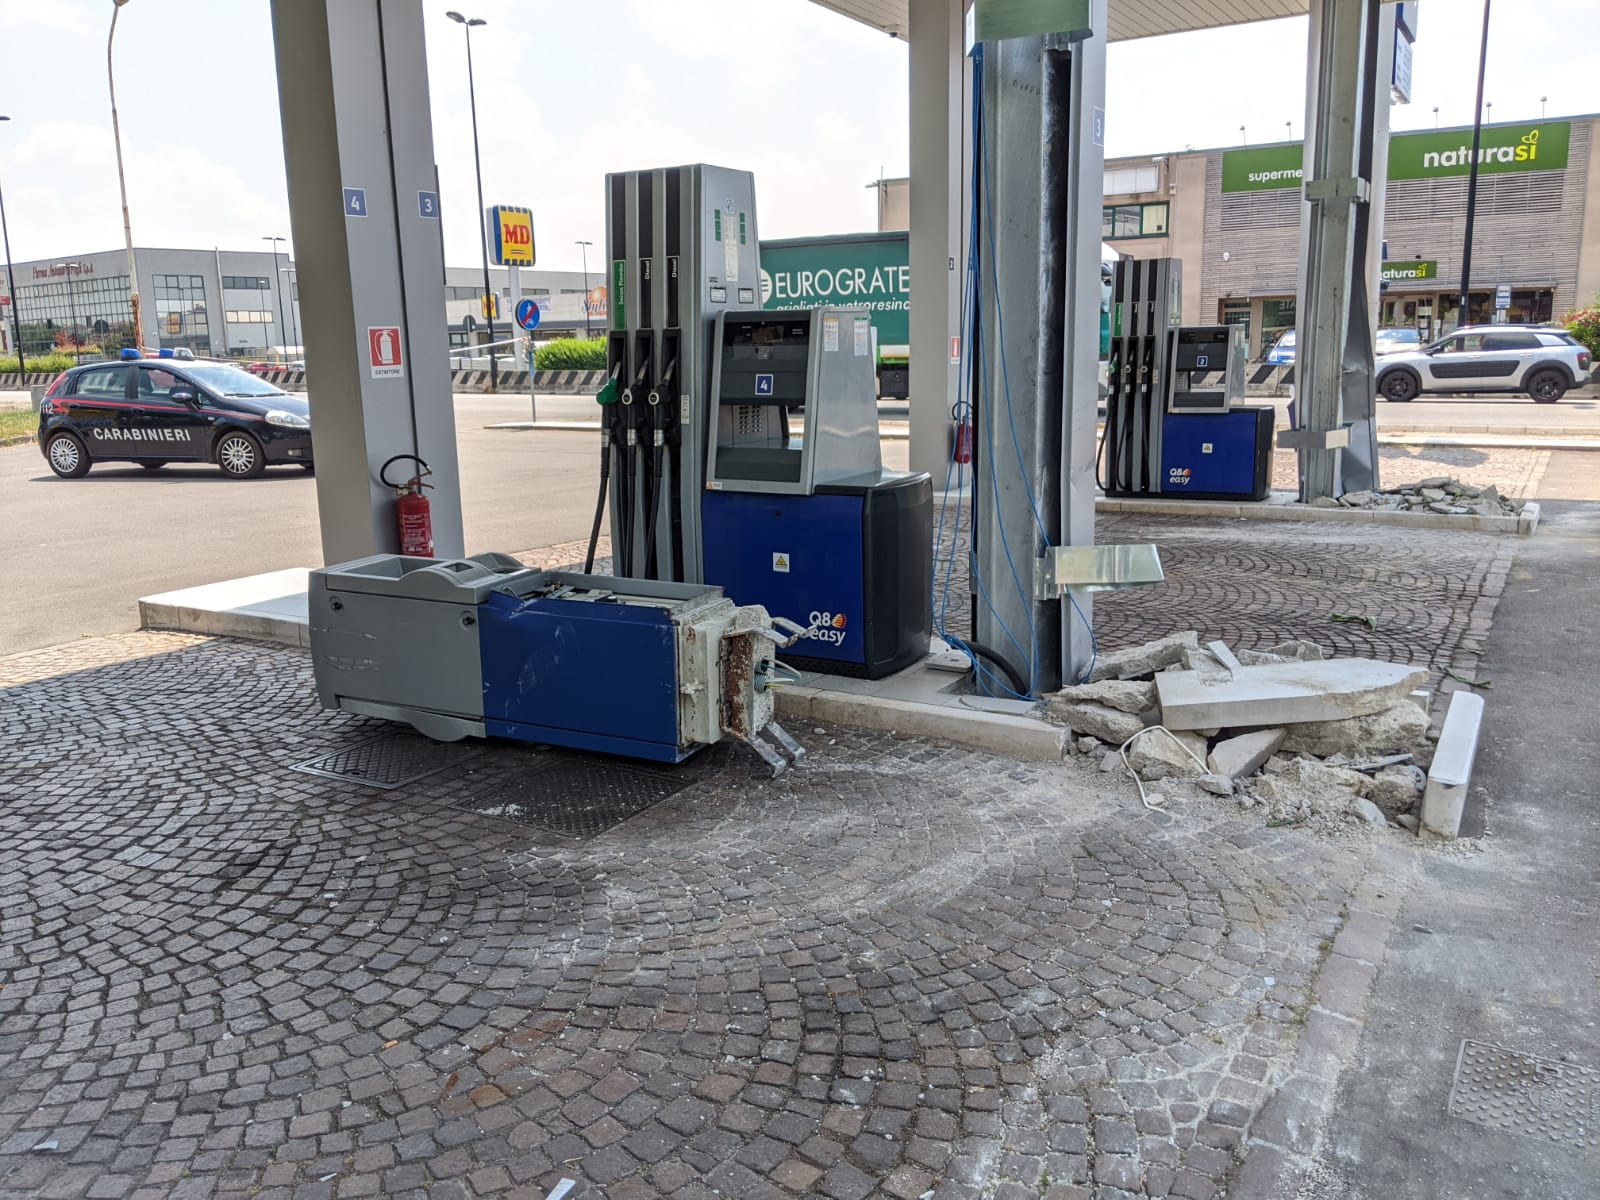 Assalto notturno al bancomat del distributore di benzina sulla Saronno-Monza